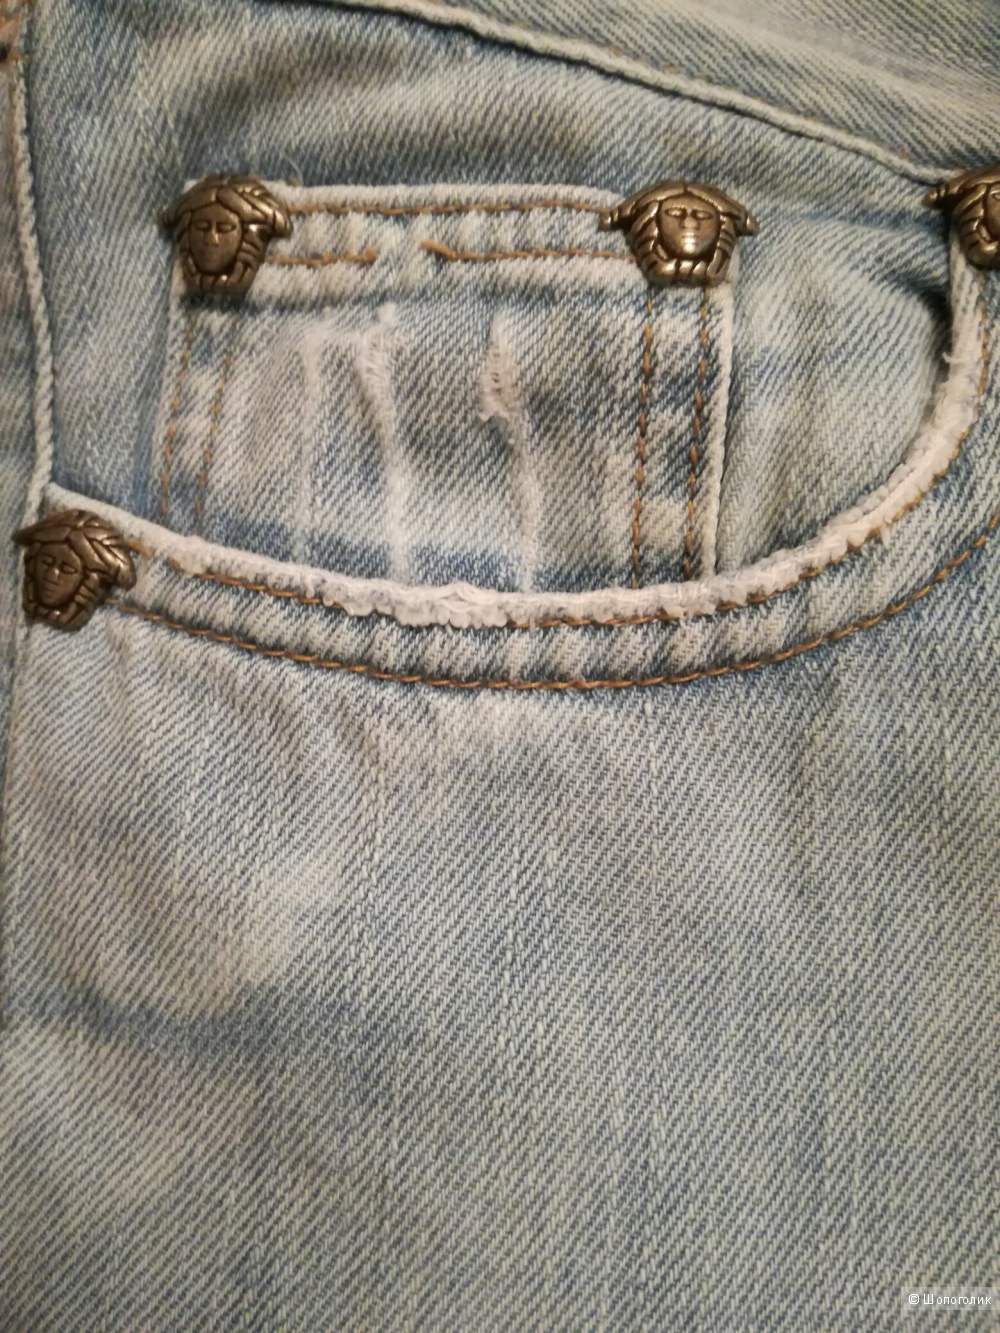 Versace jeans couture джинсы голубые 42-44 размер